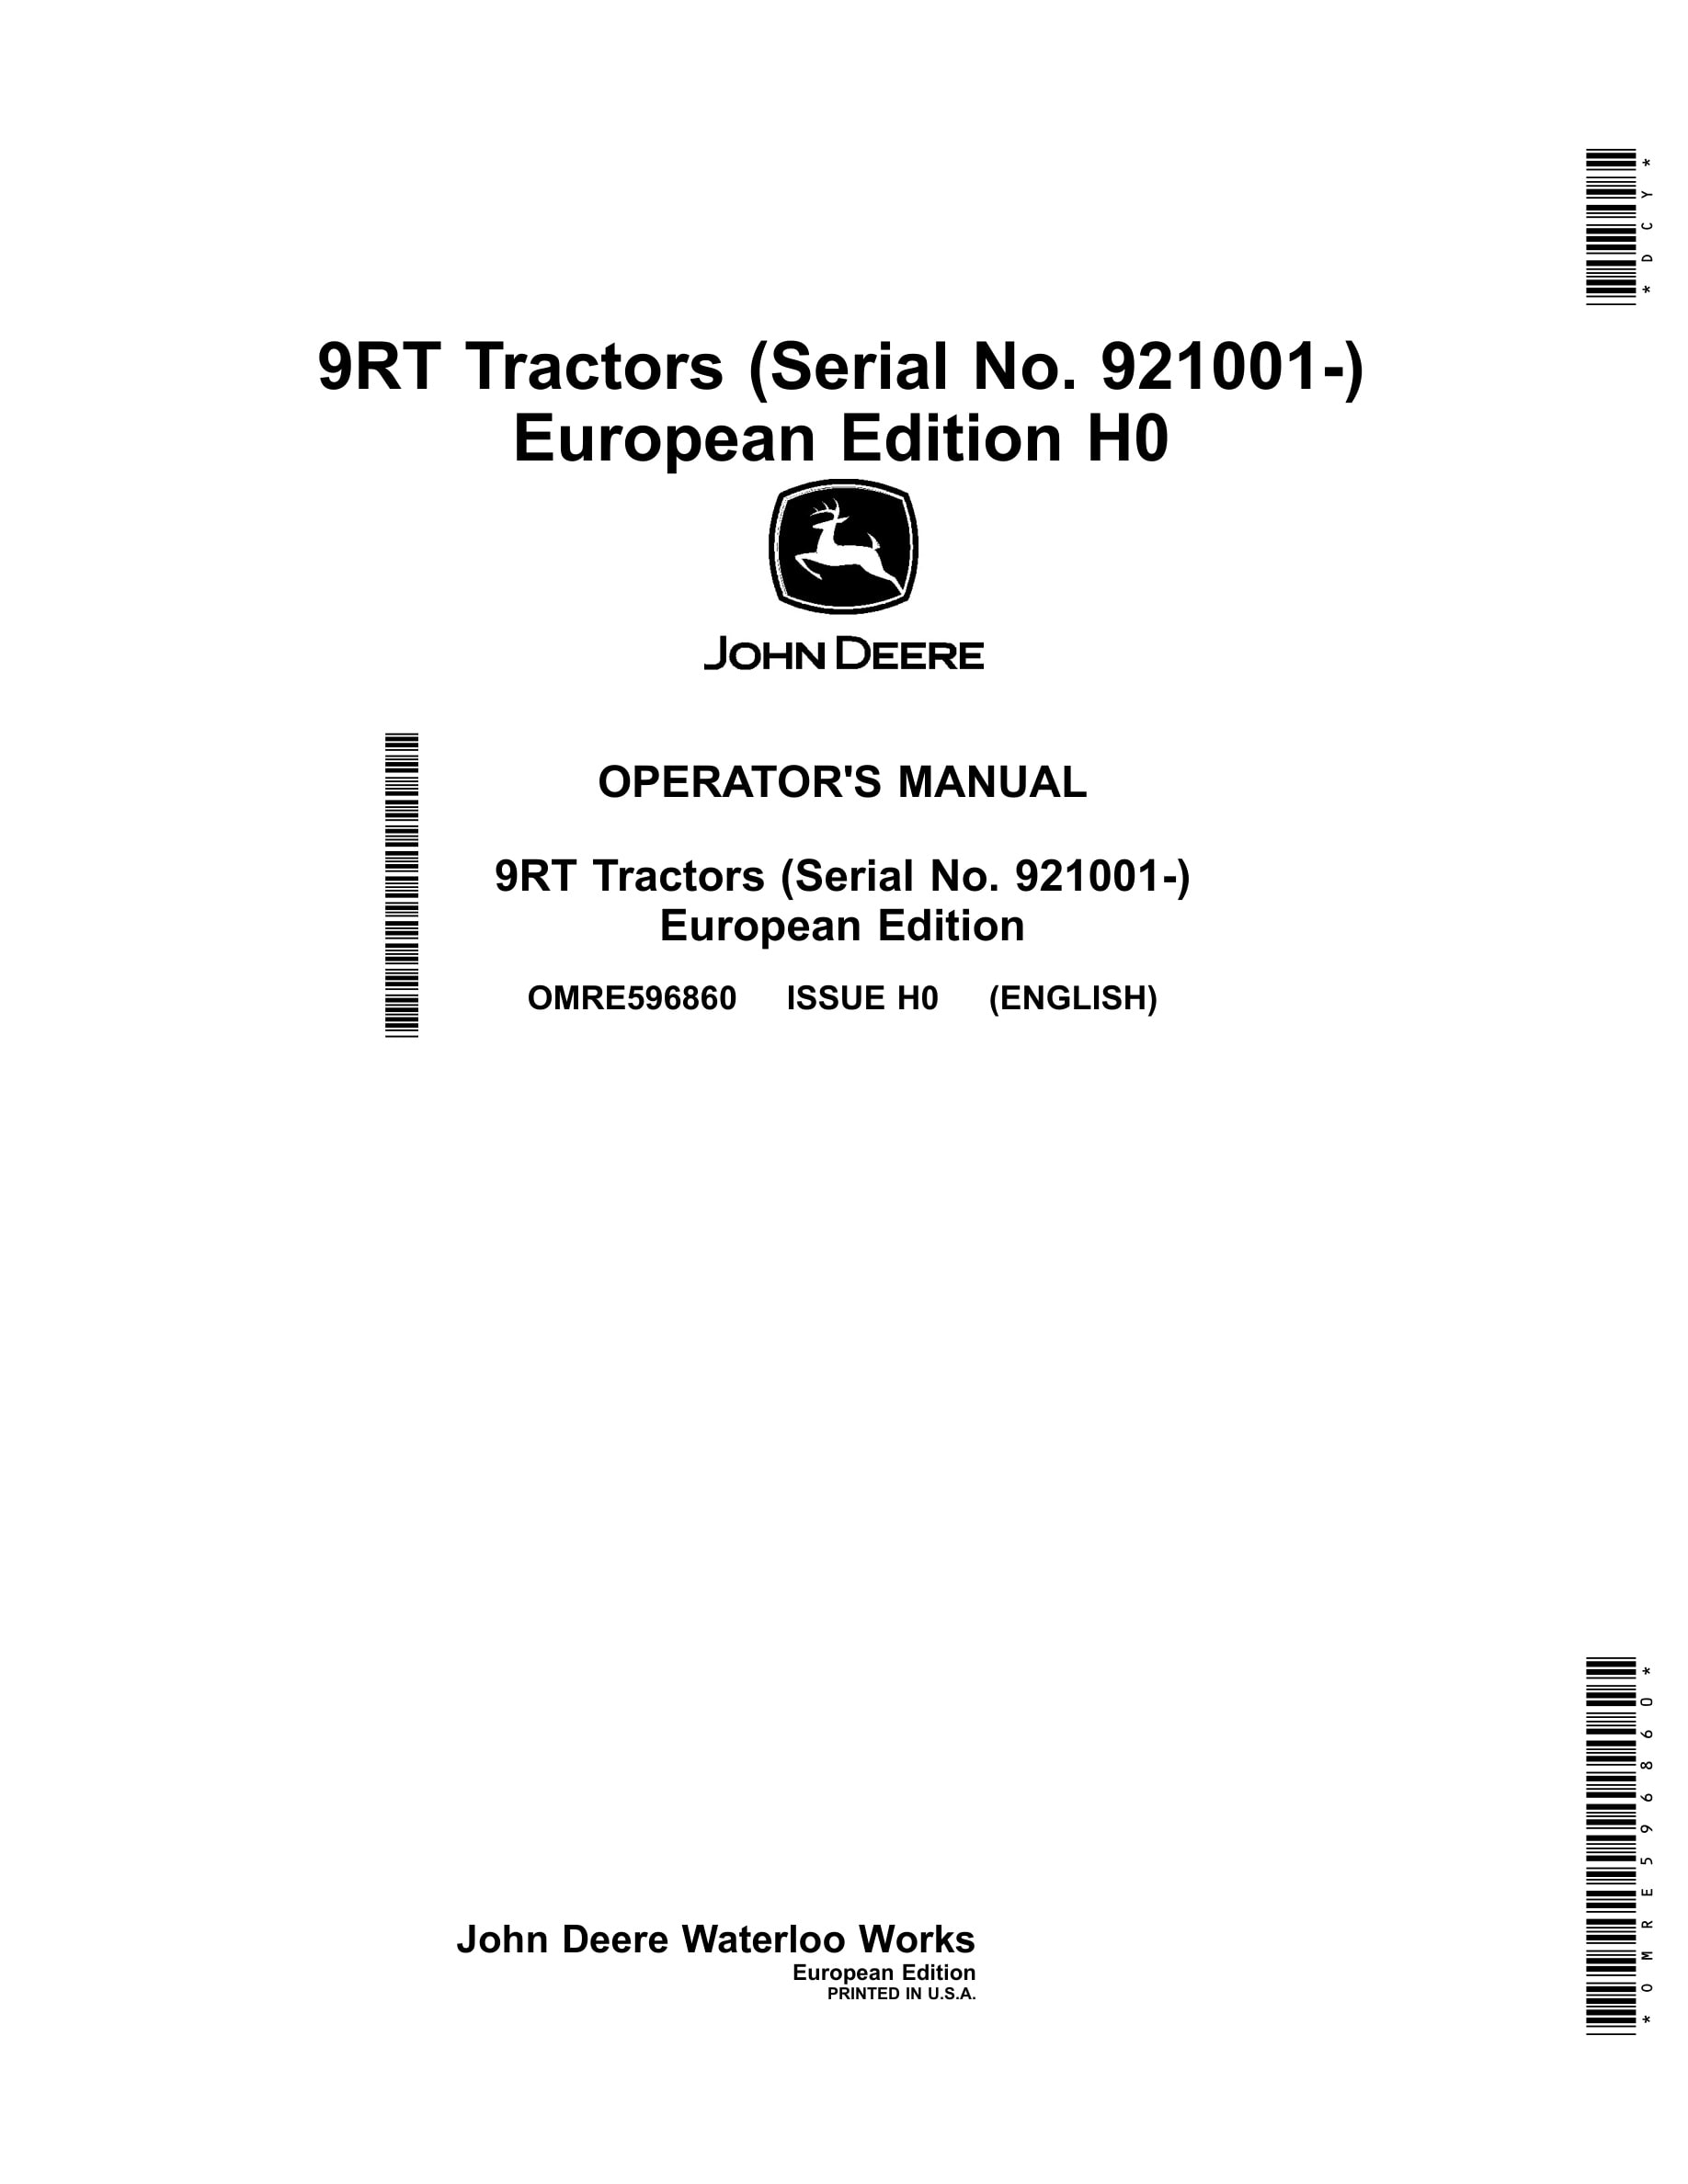 John Deere 9rt Tractors Operator Manuals OMRE596860-1